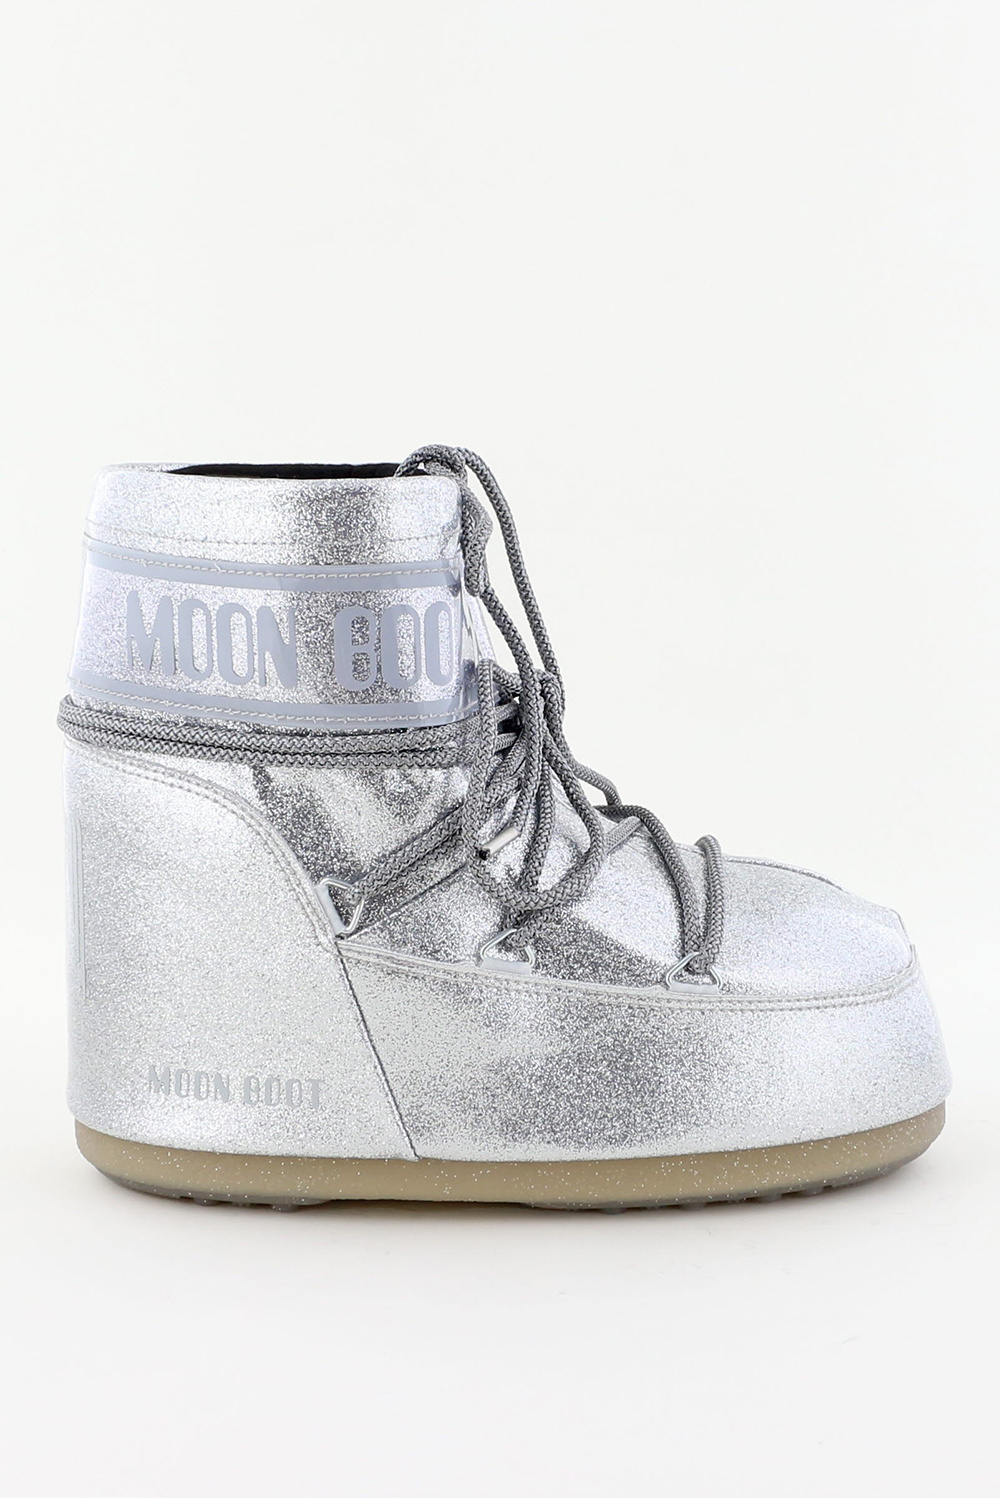 Moon Boot laarzen Icon Low Glitter 14094400 silver